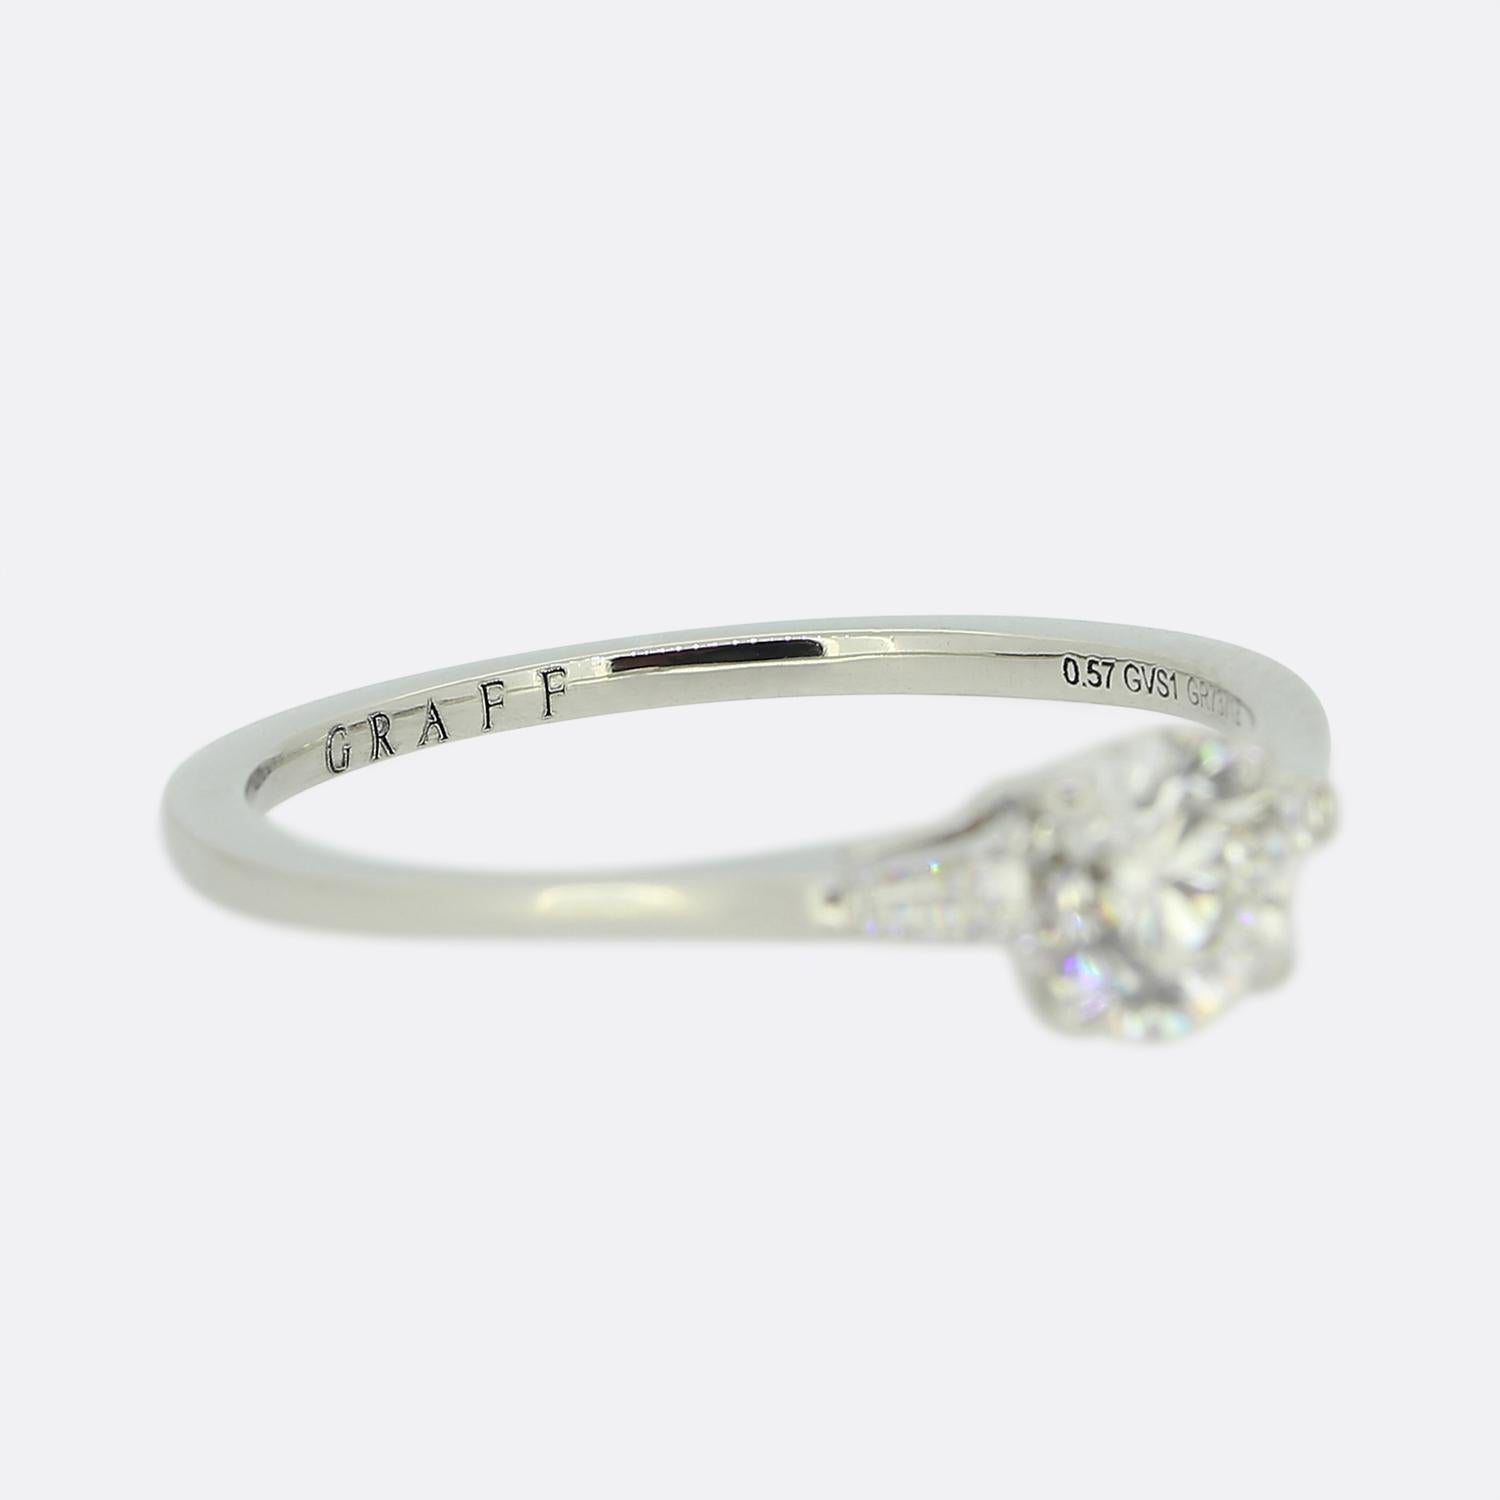 Women's or Men's Graff 0.57 Carat Diamond Promise Ring For Sale